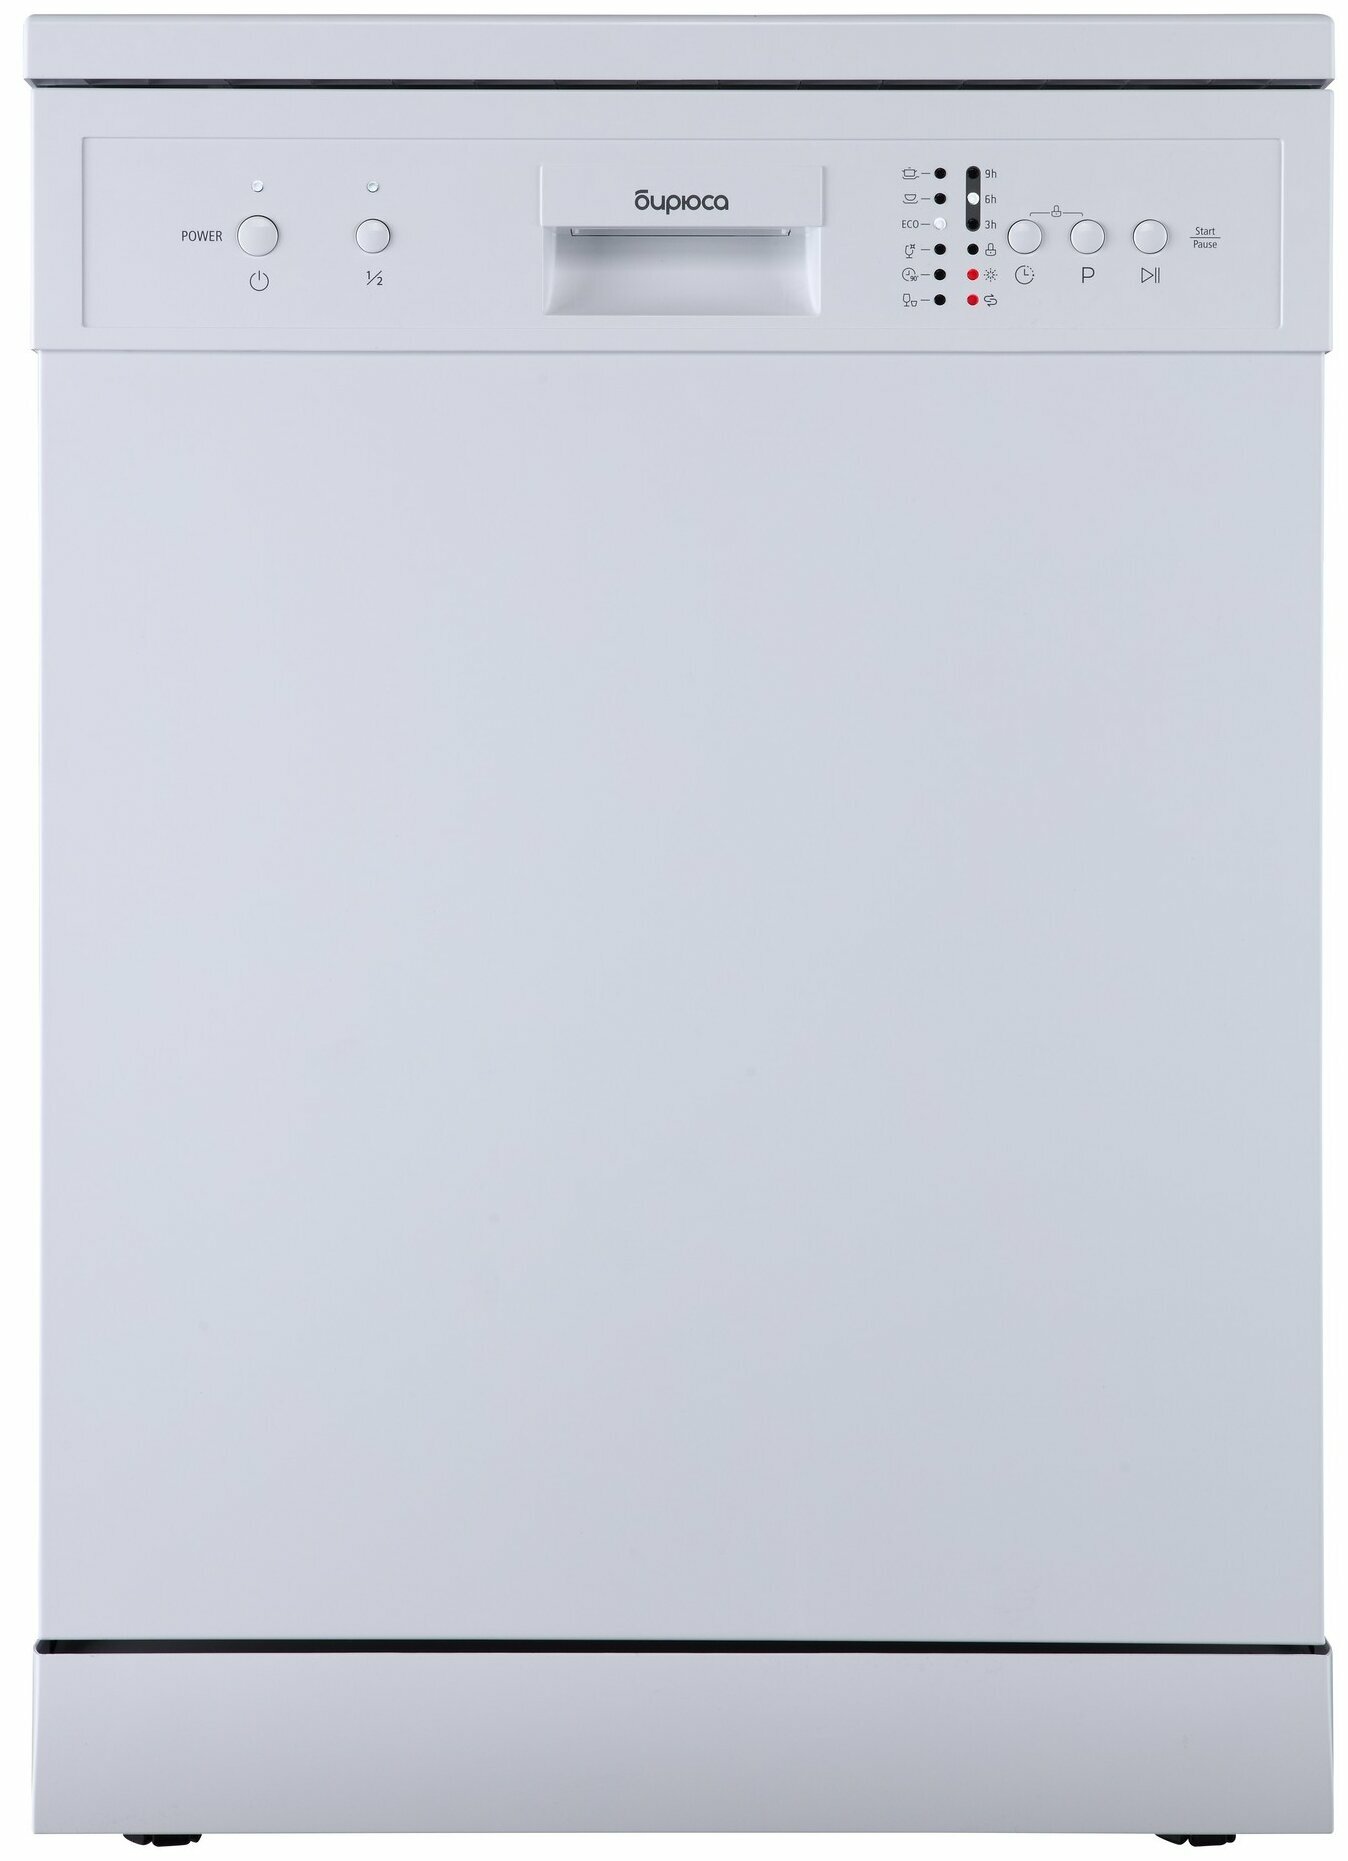 Посудомоечная машина Бирюса DWF-612/6W (12комп.6прогр.1/2загр)